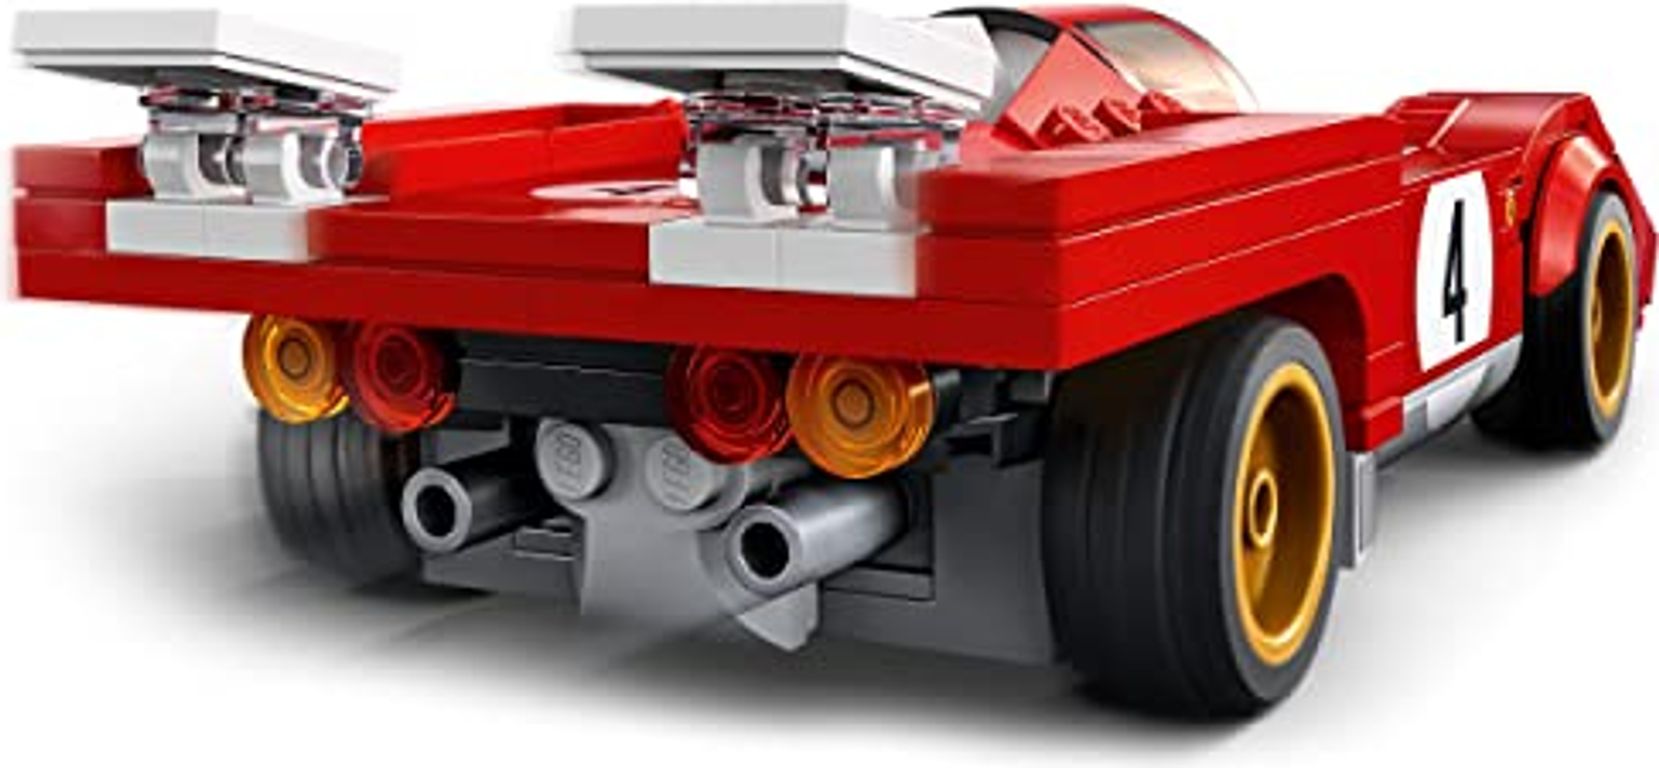 LEGO® Speed Champions 1970 Ferrari 512 M lato posteriore